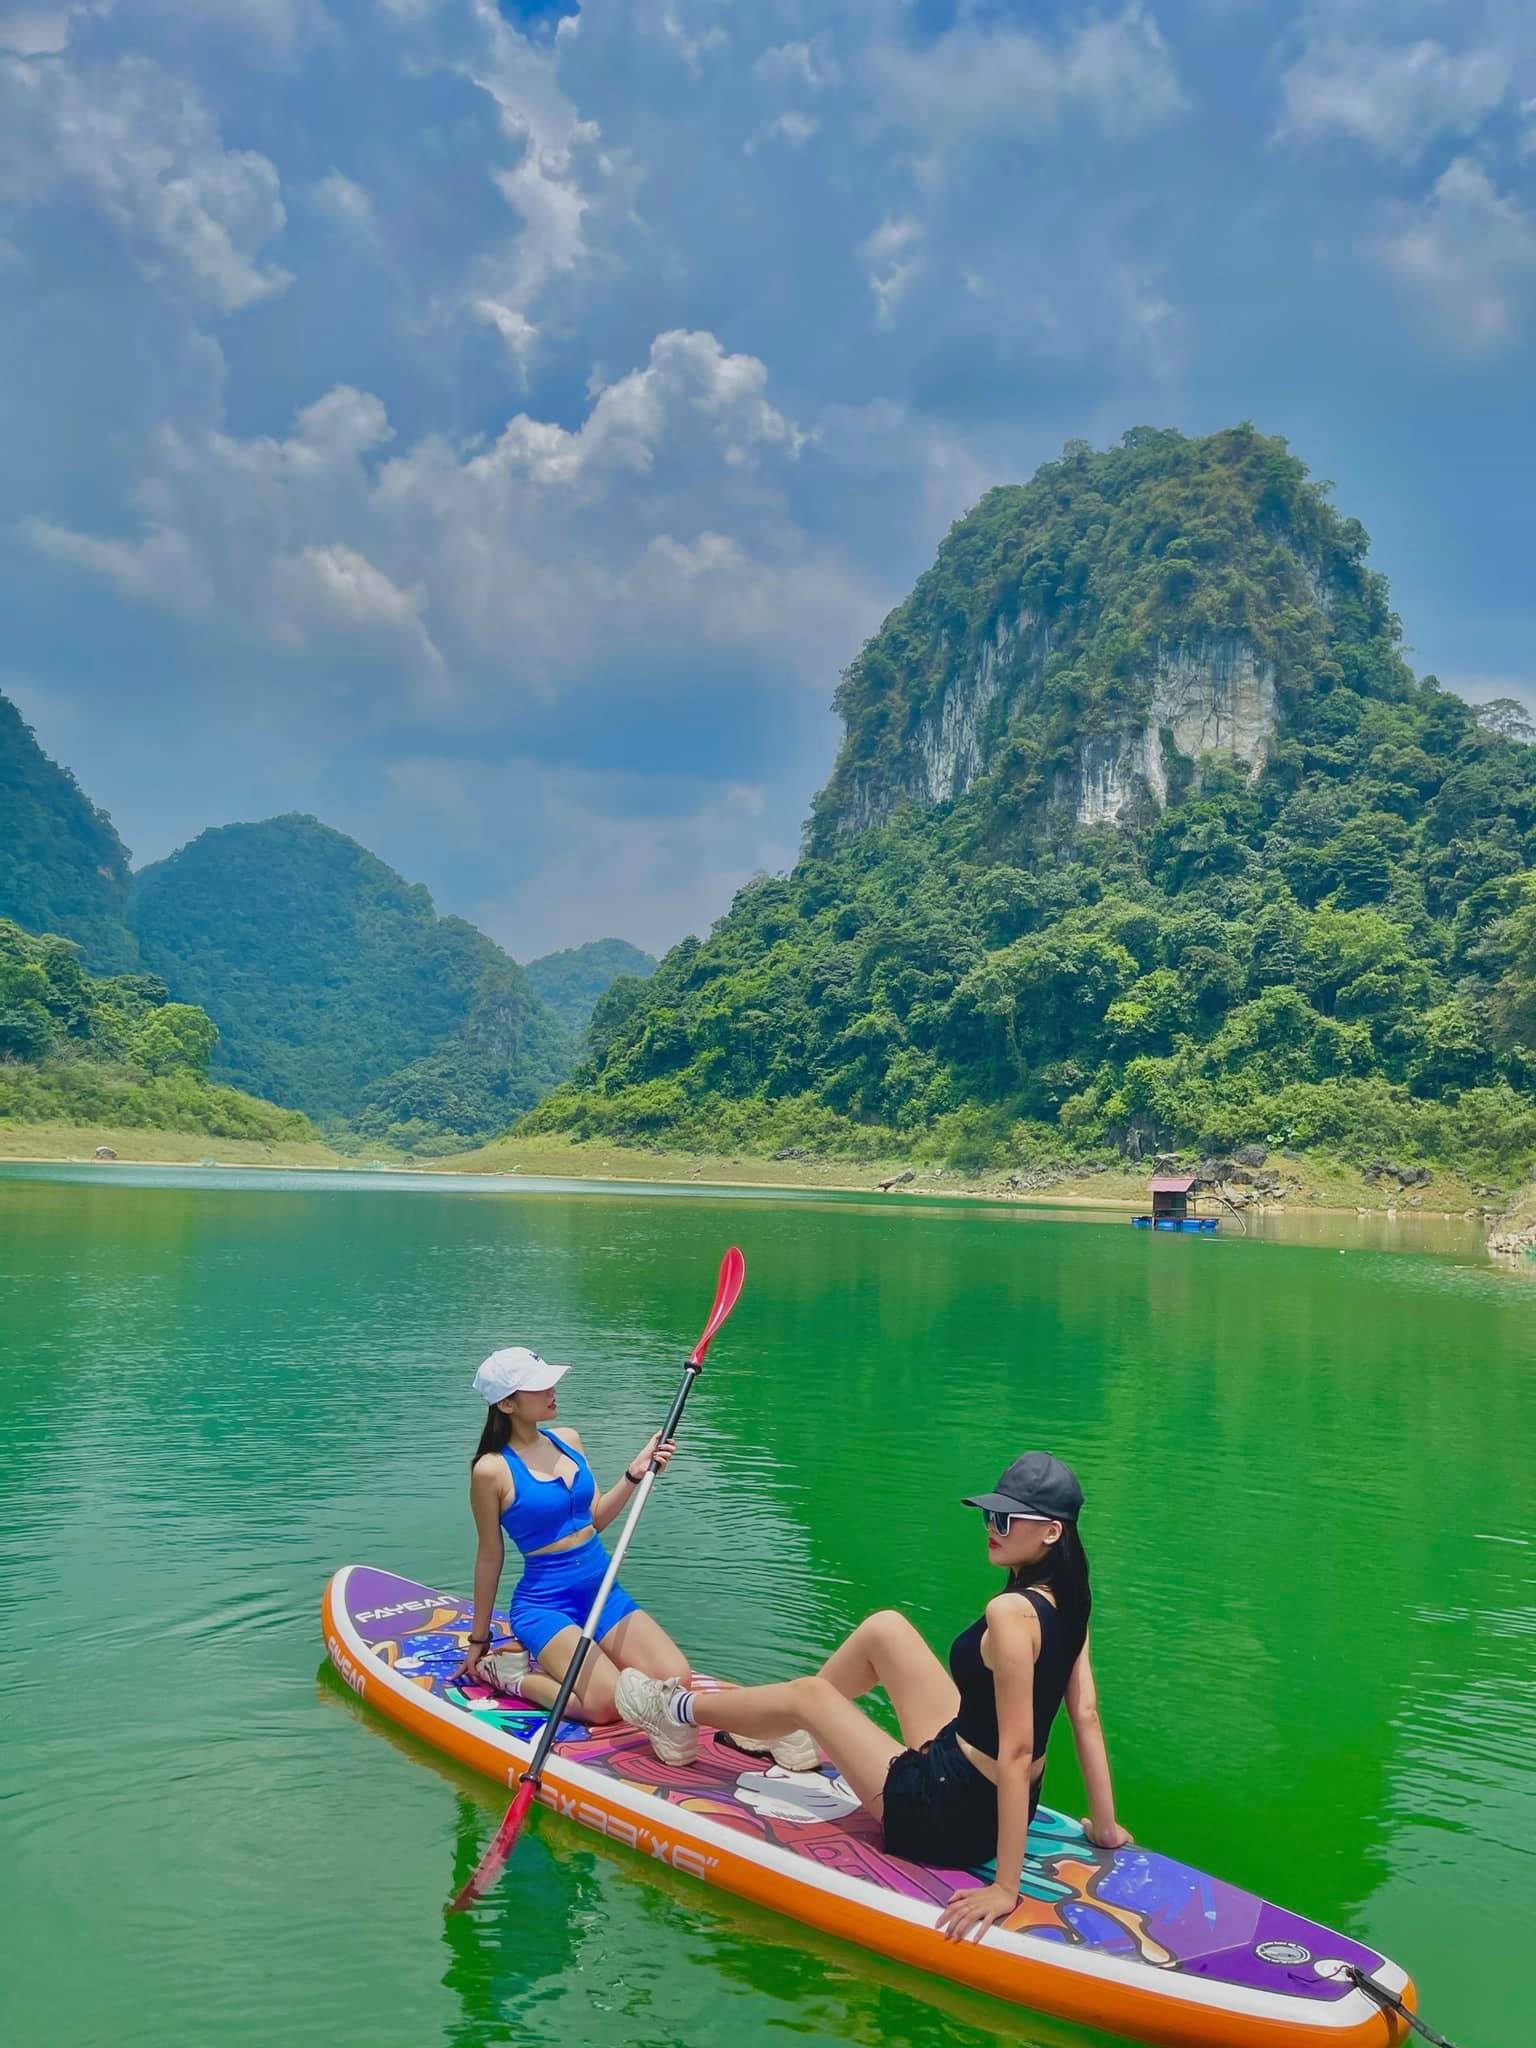 Chèo thuyền trên hồ Thang Hen ngắm cảnh thần tiên - 1